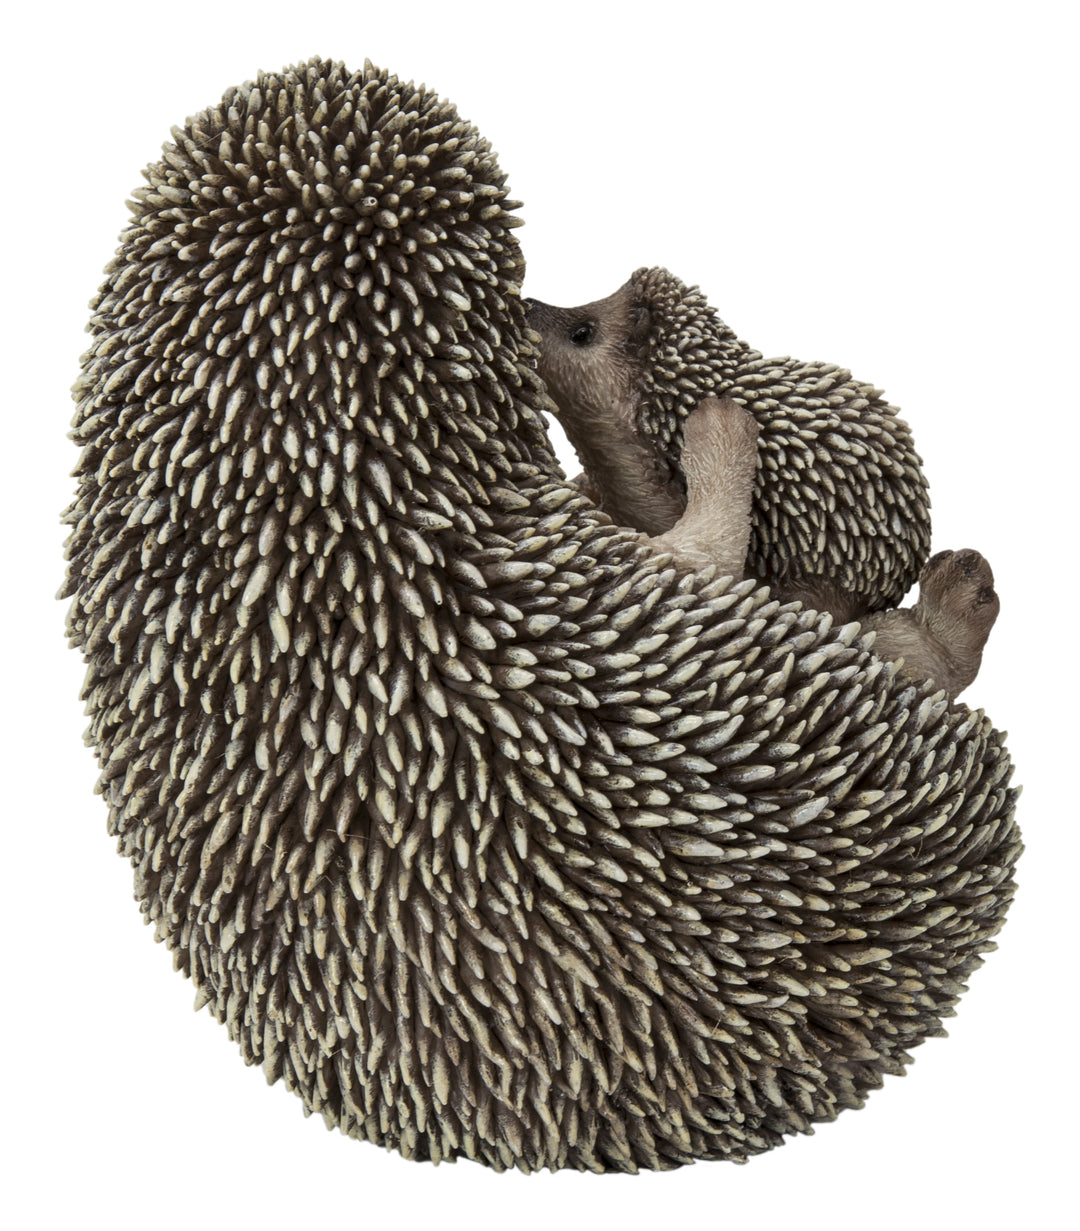 Mother & Baby Hedgehogs On Back HI-LINE GIFT LTD.